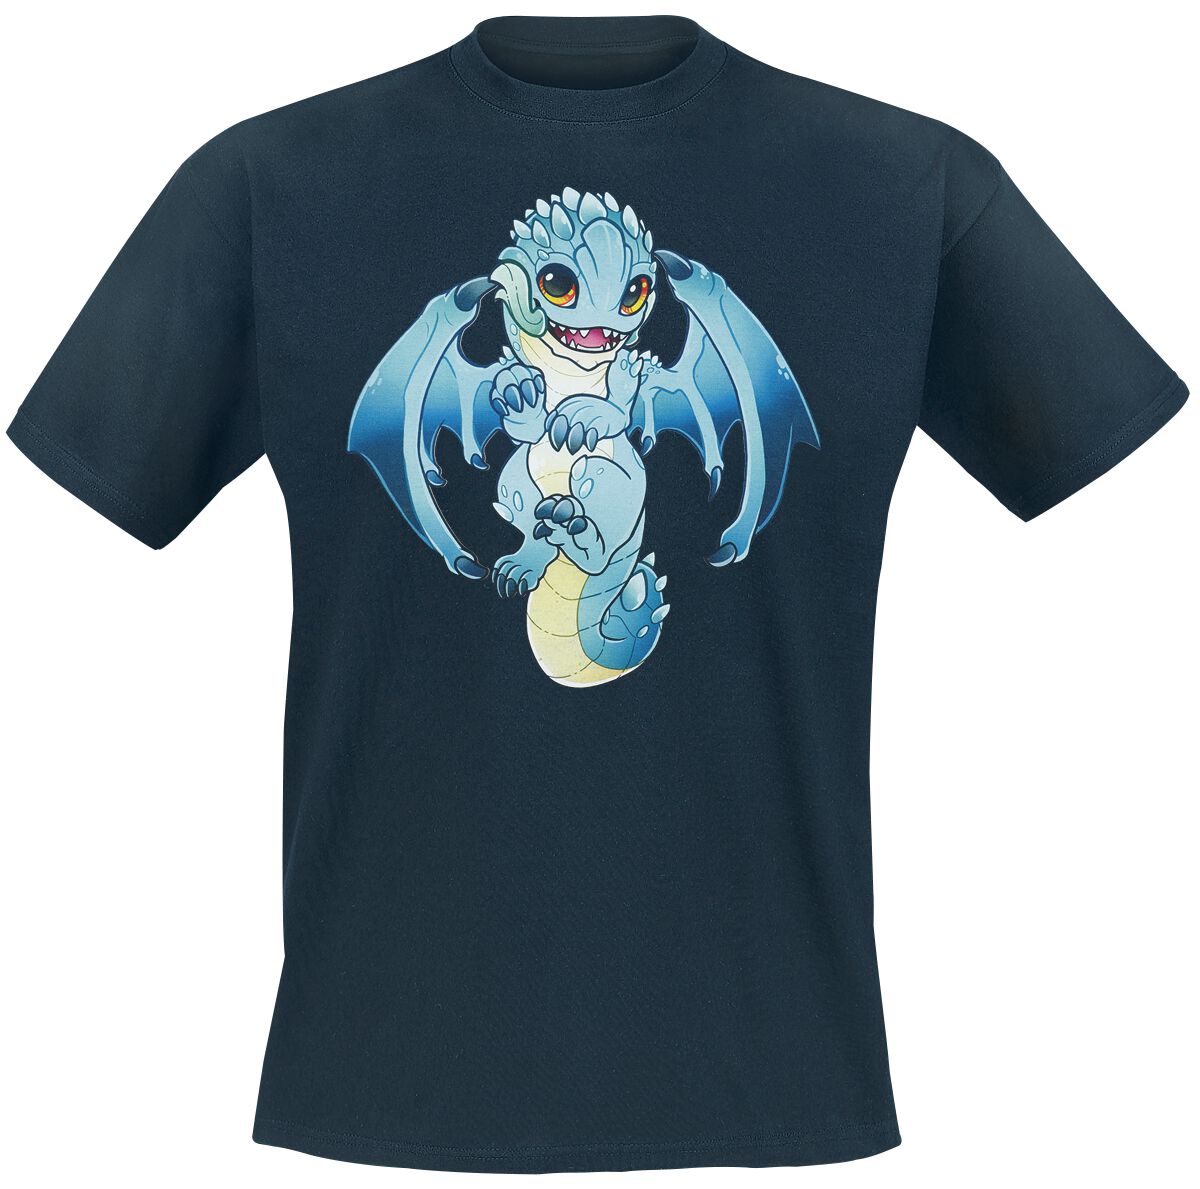 Guild Wars - Gaming T-Shirt - Baby Aurene by RinTheYordle - S bis XL - für Männer - Größe S - dunkelblau  - EMP exklusives Merchandise!